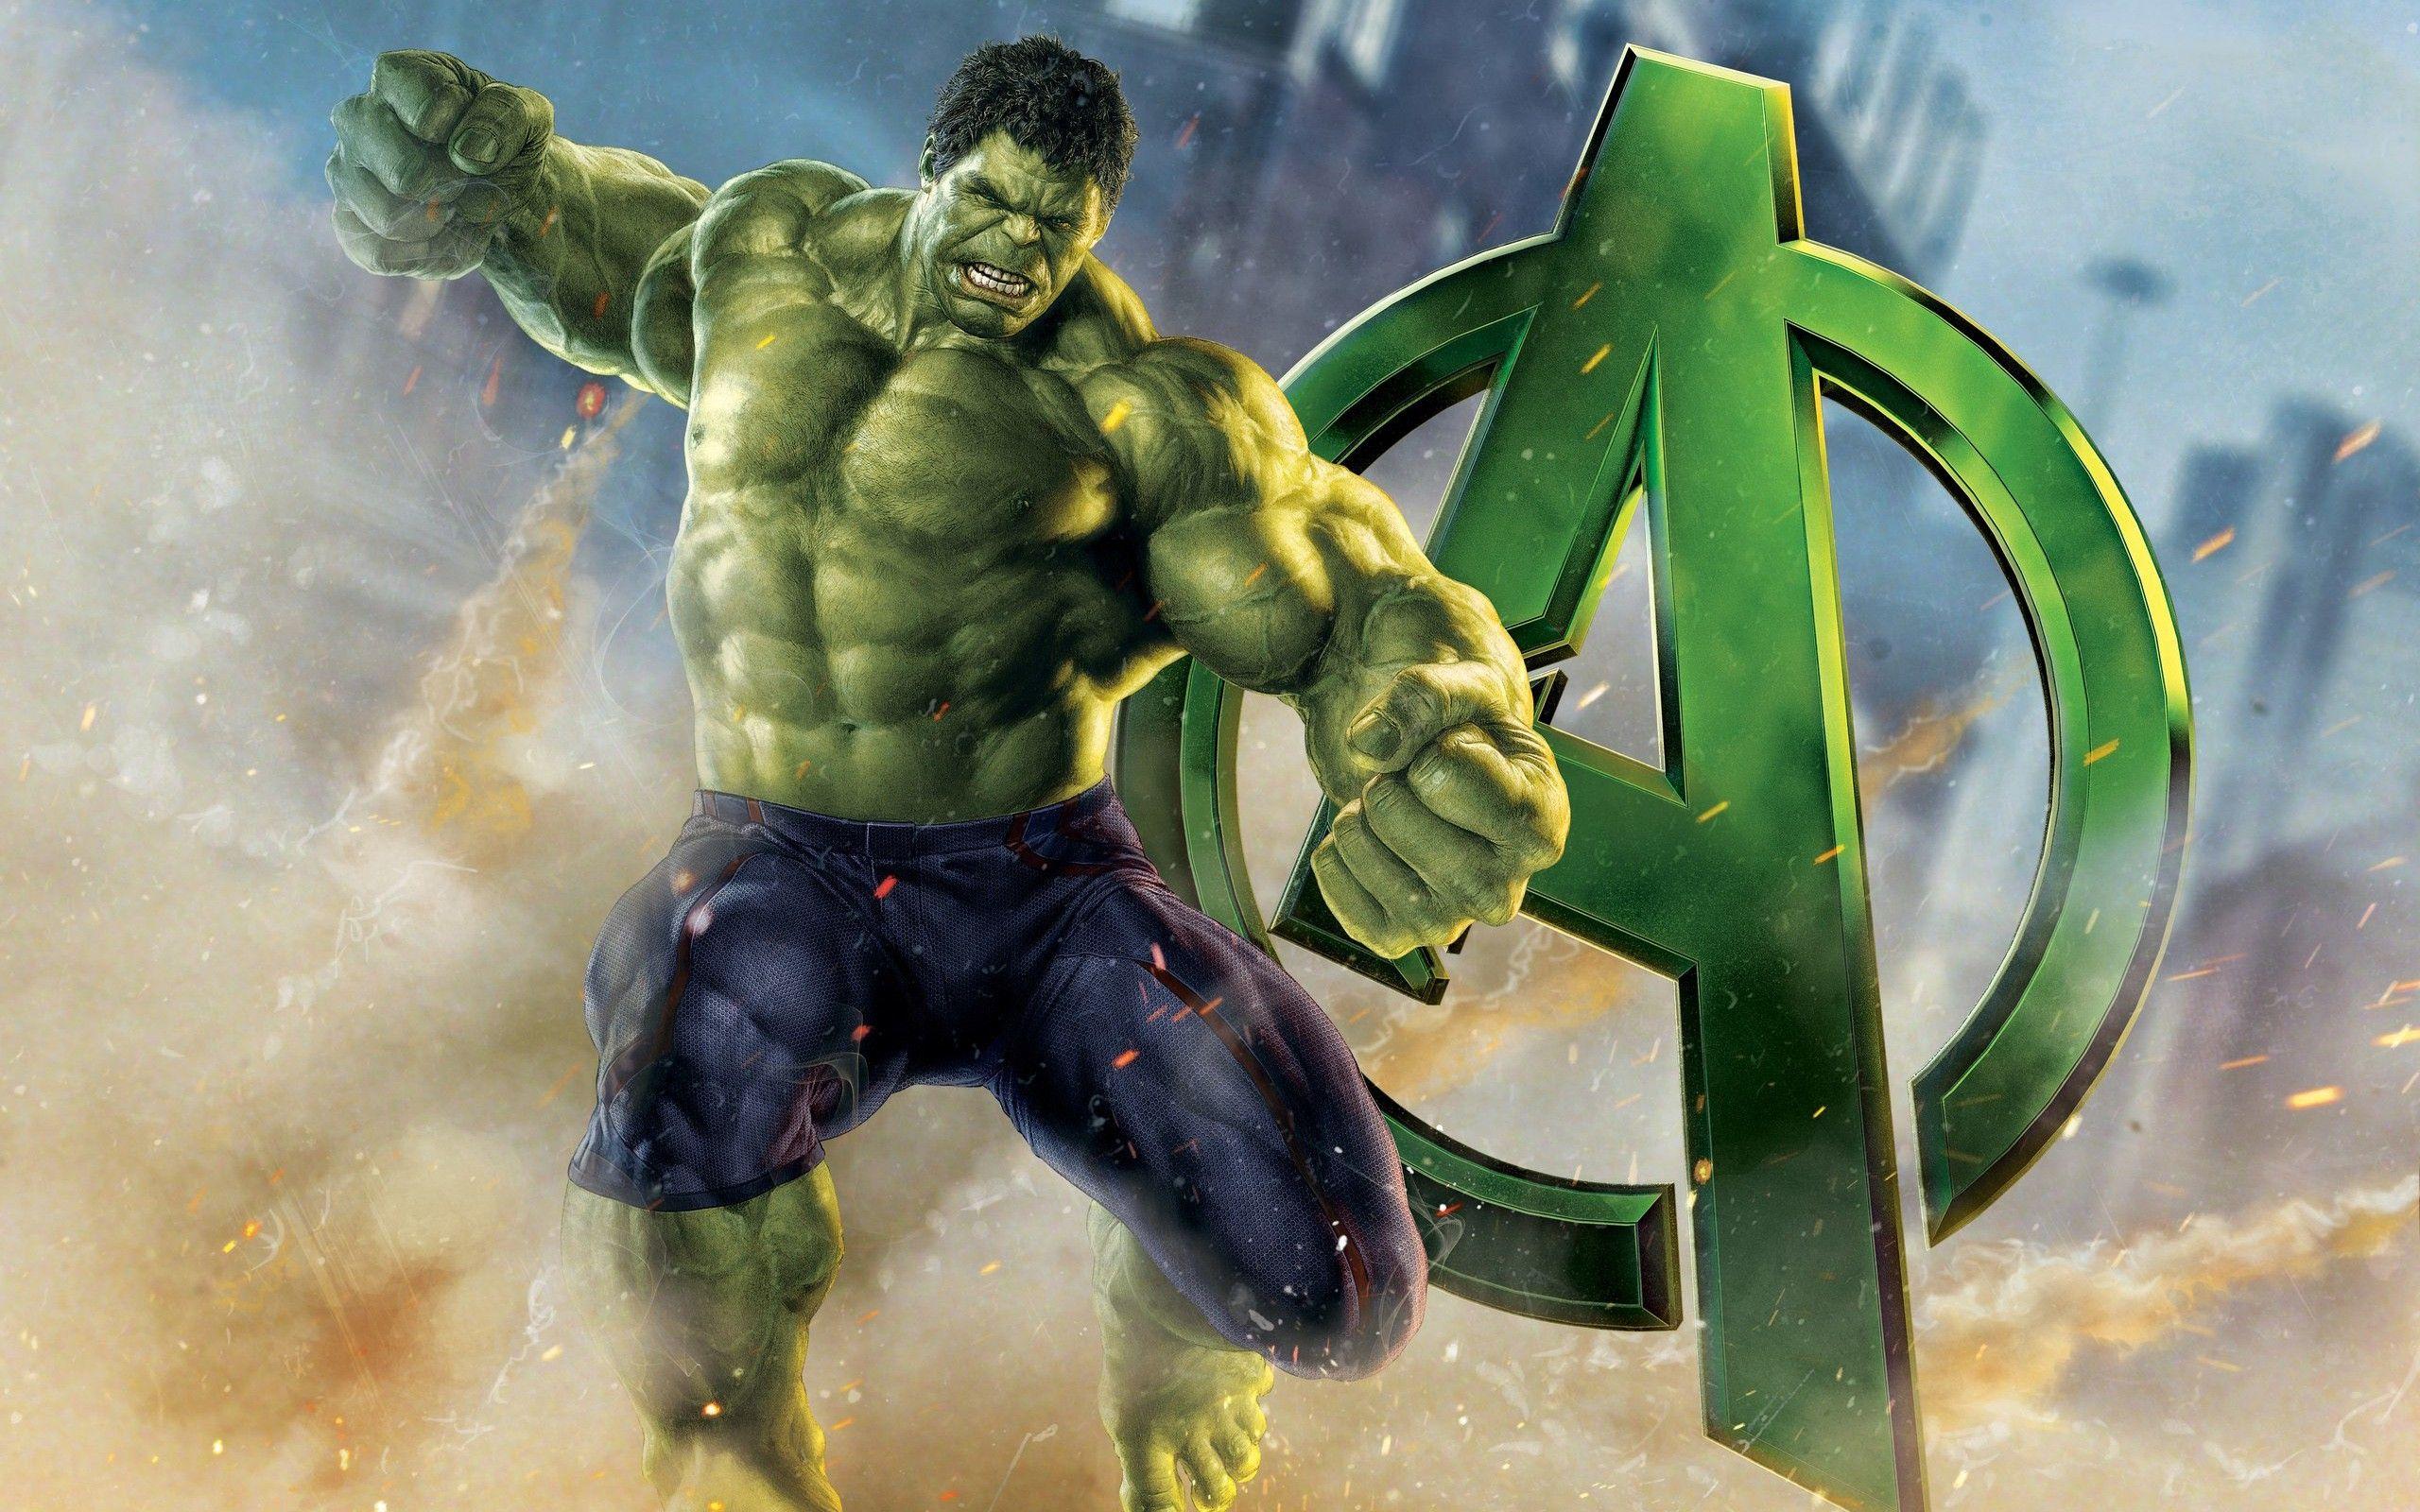 47+] Hulk HD Wallpapers 1080p - WallpaperSafari